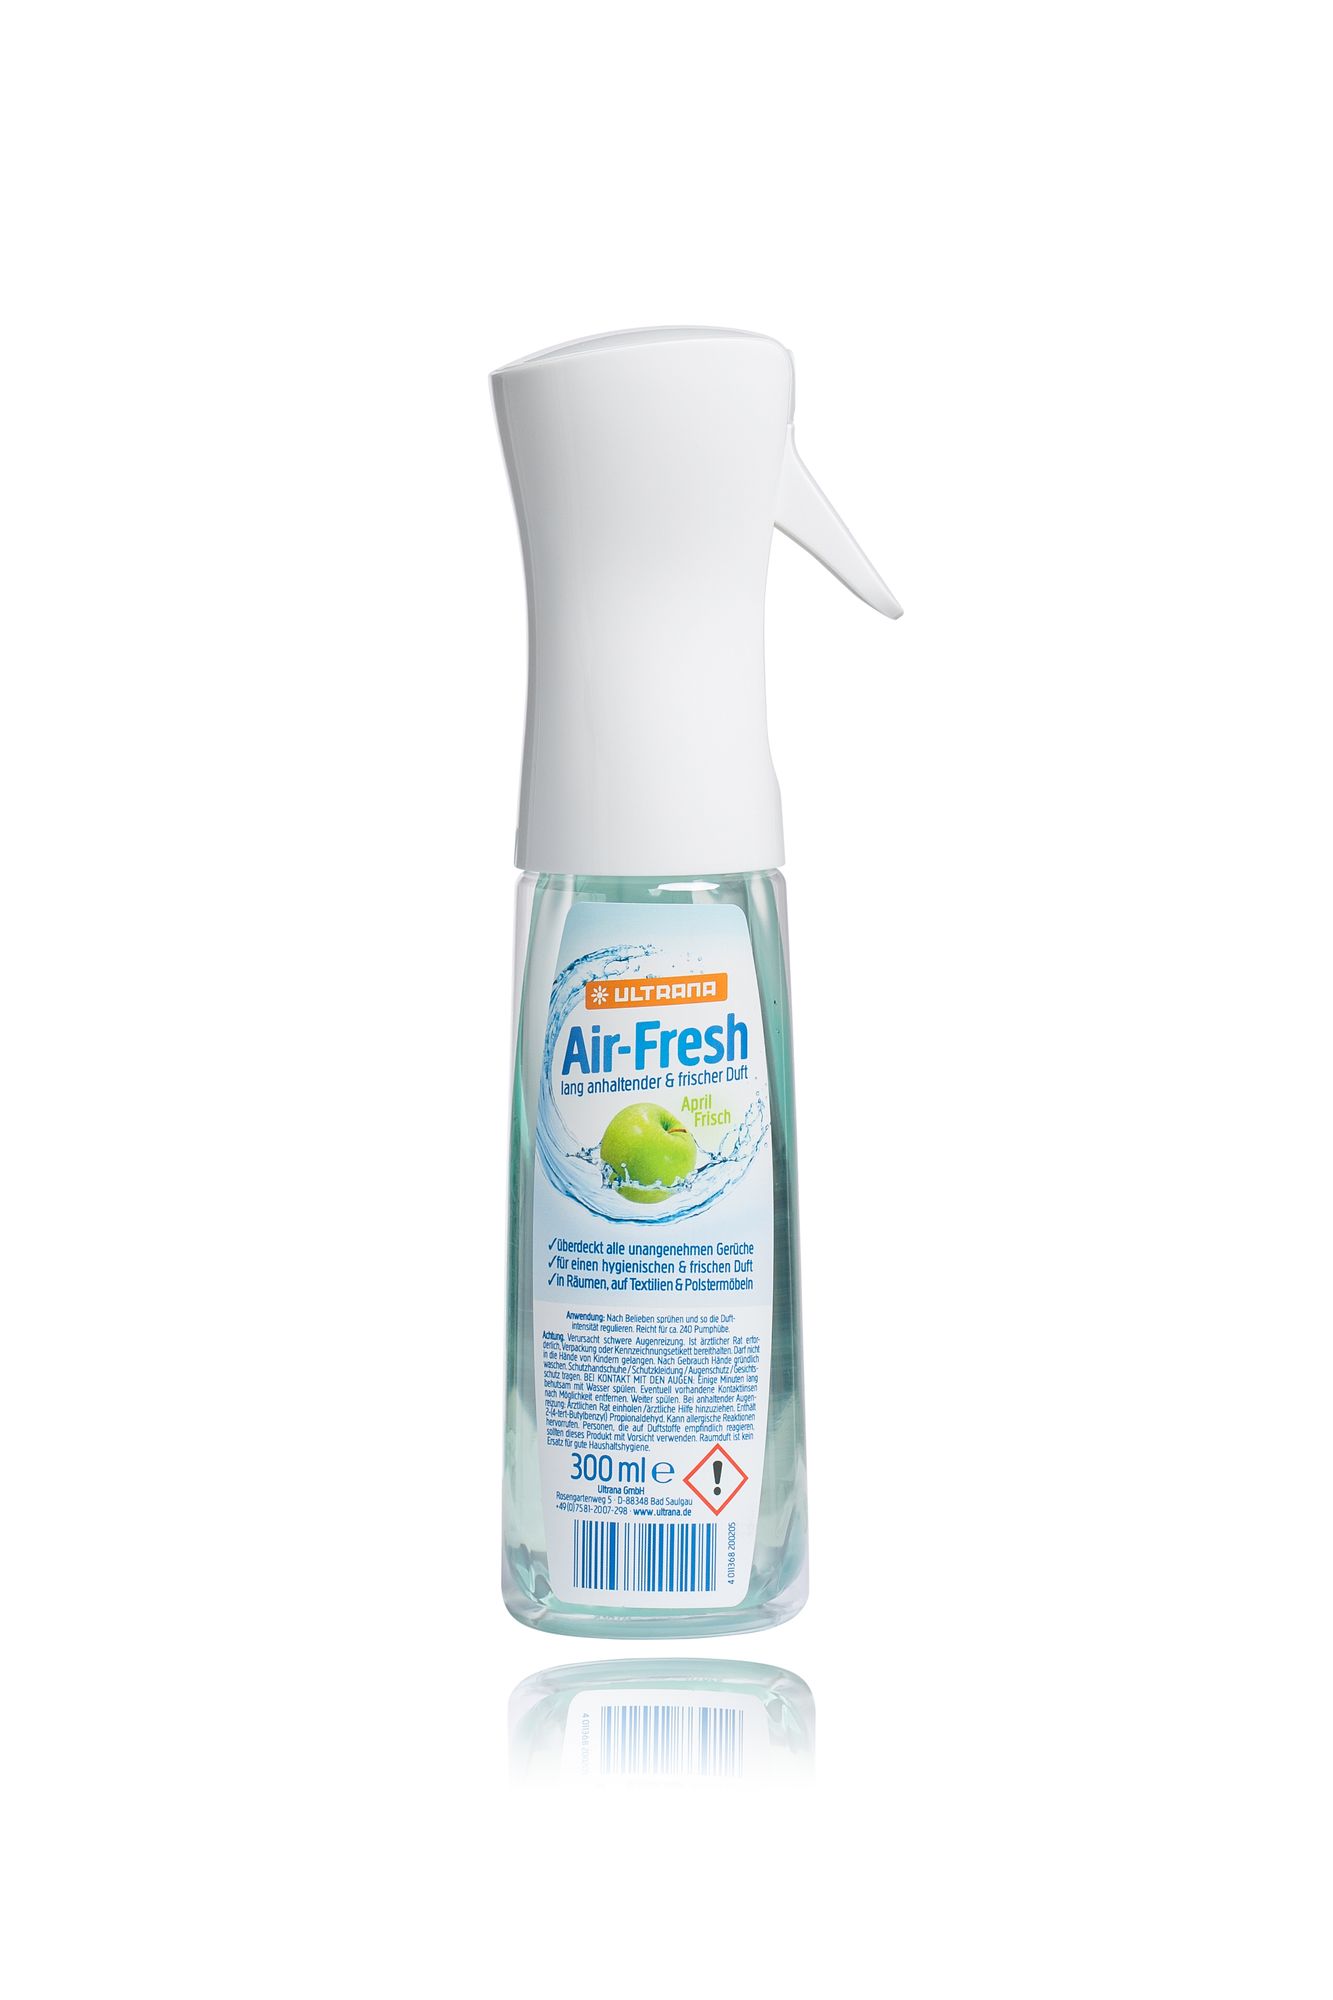 Ultrana Air-Fresh April Frisch Raumduftspray- Textilduftspray- Polstermöbelduftspray 300ml unter Hygiene